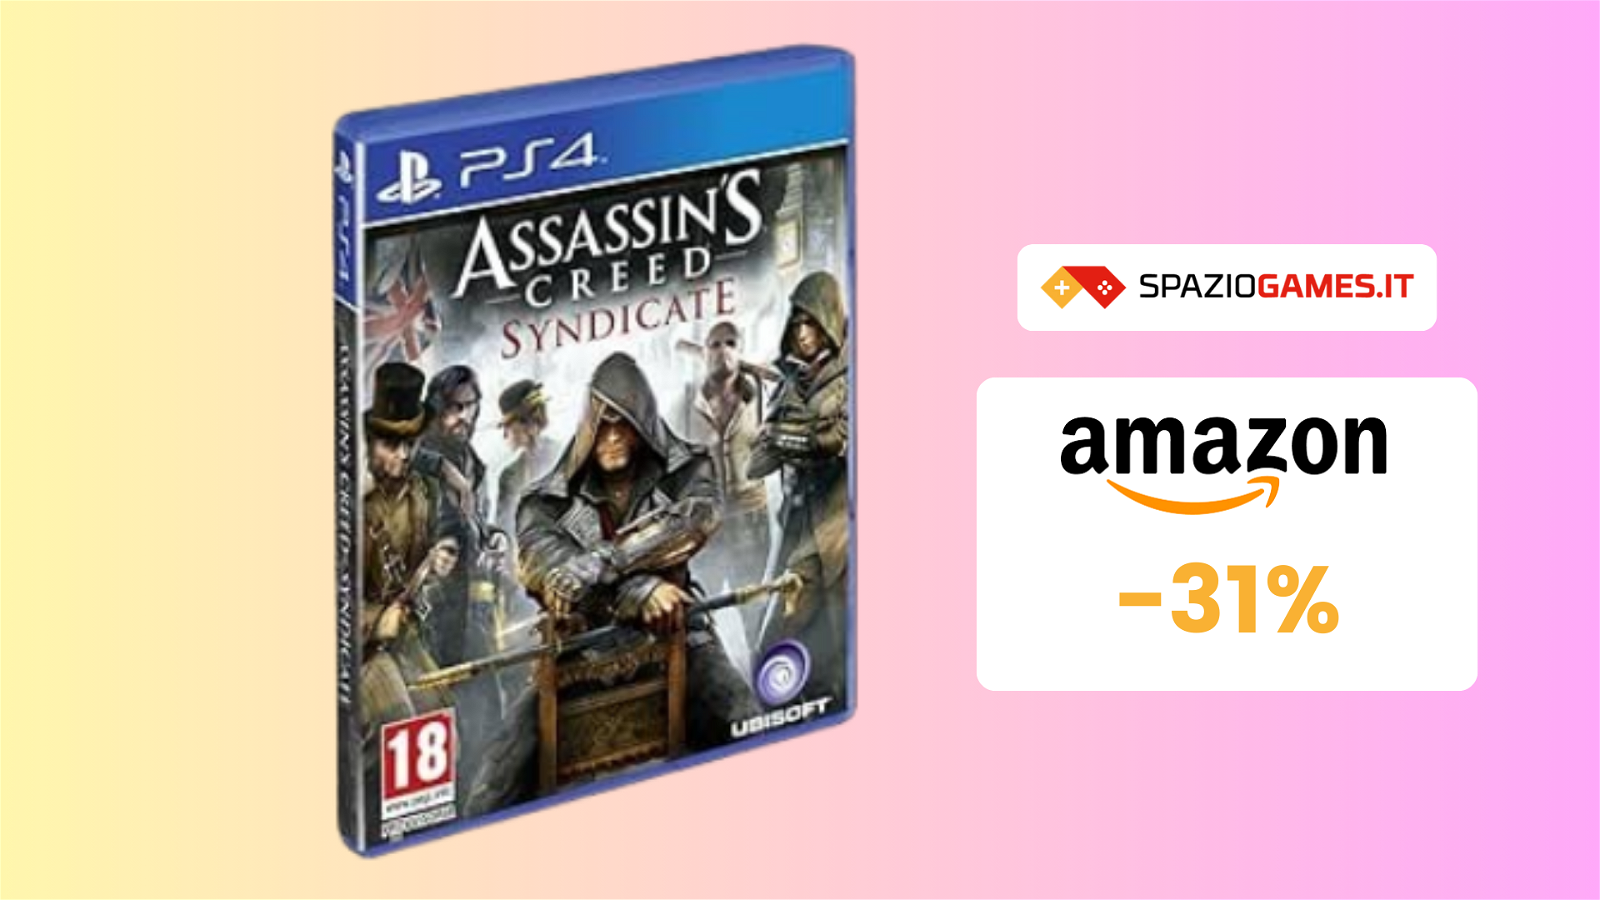 Assassin's Creed Syndicate per PS4 a 21€: SCONTO del 31%!